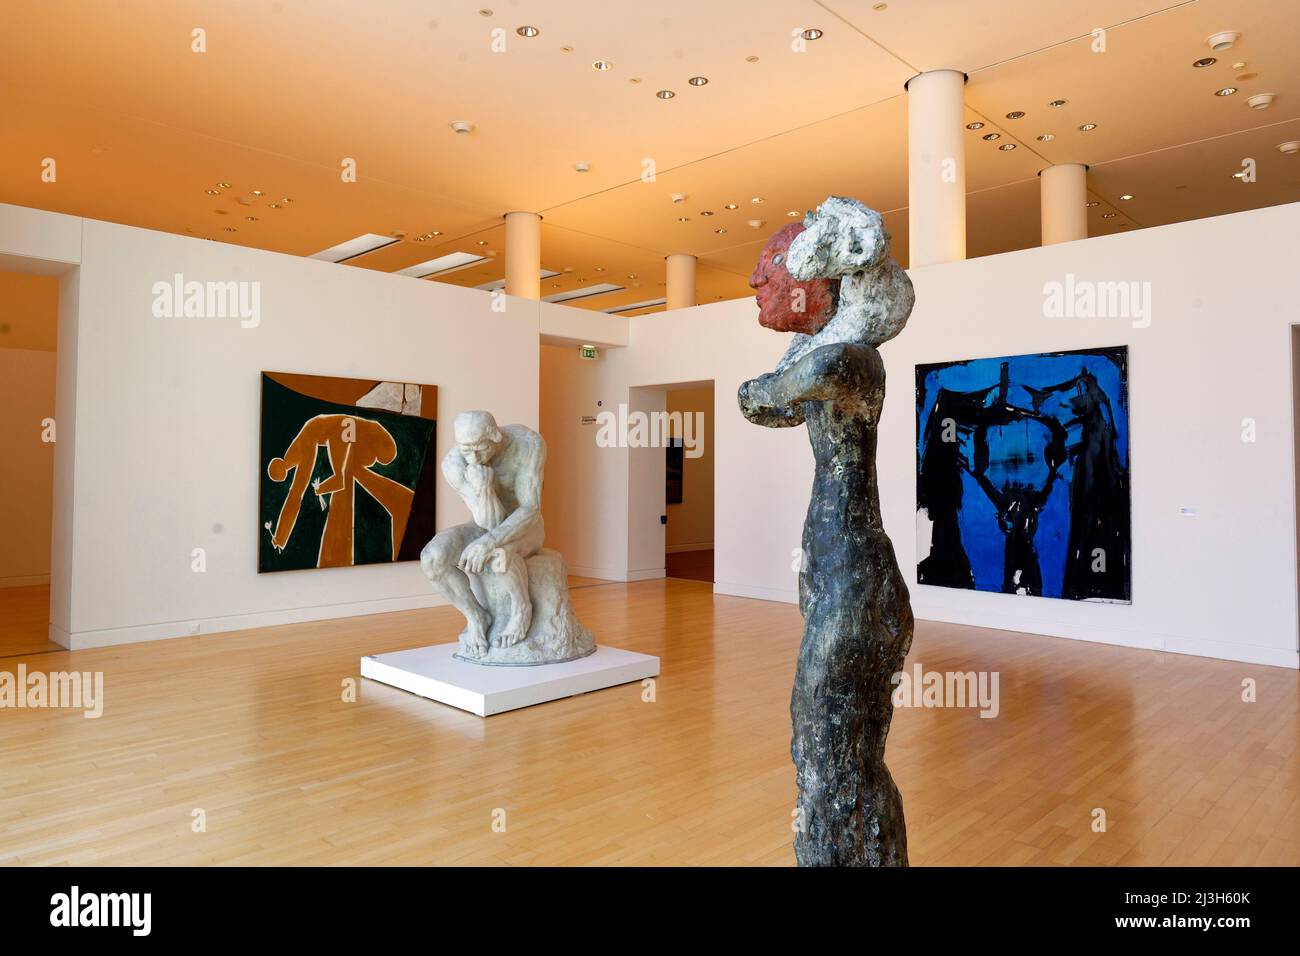 France, Bas Rhin, Strasbourg, Musée d'Art moderne et contemporain de Strasbourg également appelé MAMCS (Musée d'Art moderne et contemporain de Strasbourg) par l'architecte Adrien Fainsilber, statues Hirte (le Berger), 1986 de Markus Lüpertz, le penseur d'Auguste Rodin et personnes cueillant des fleurs, 1958 de Pablo Picasso Banque D'Images